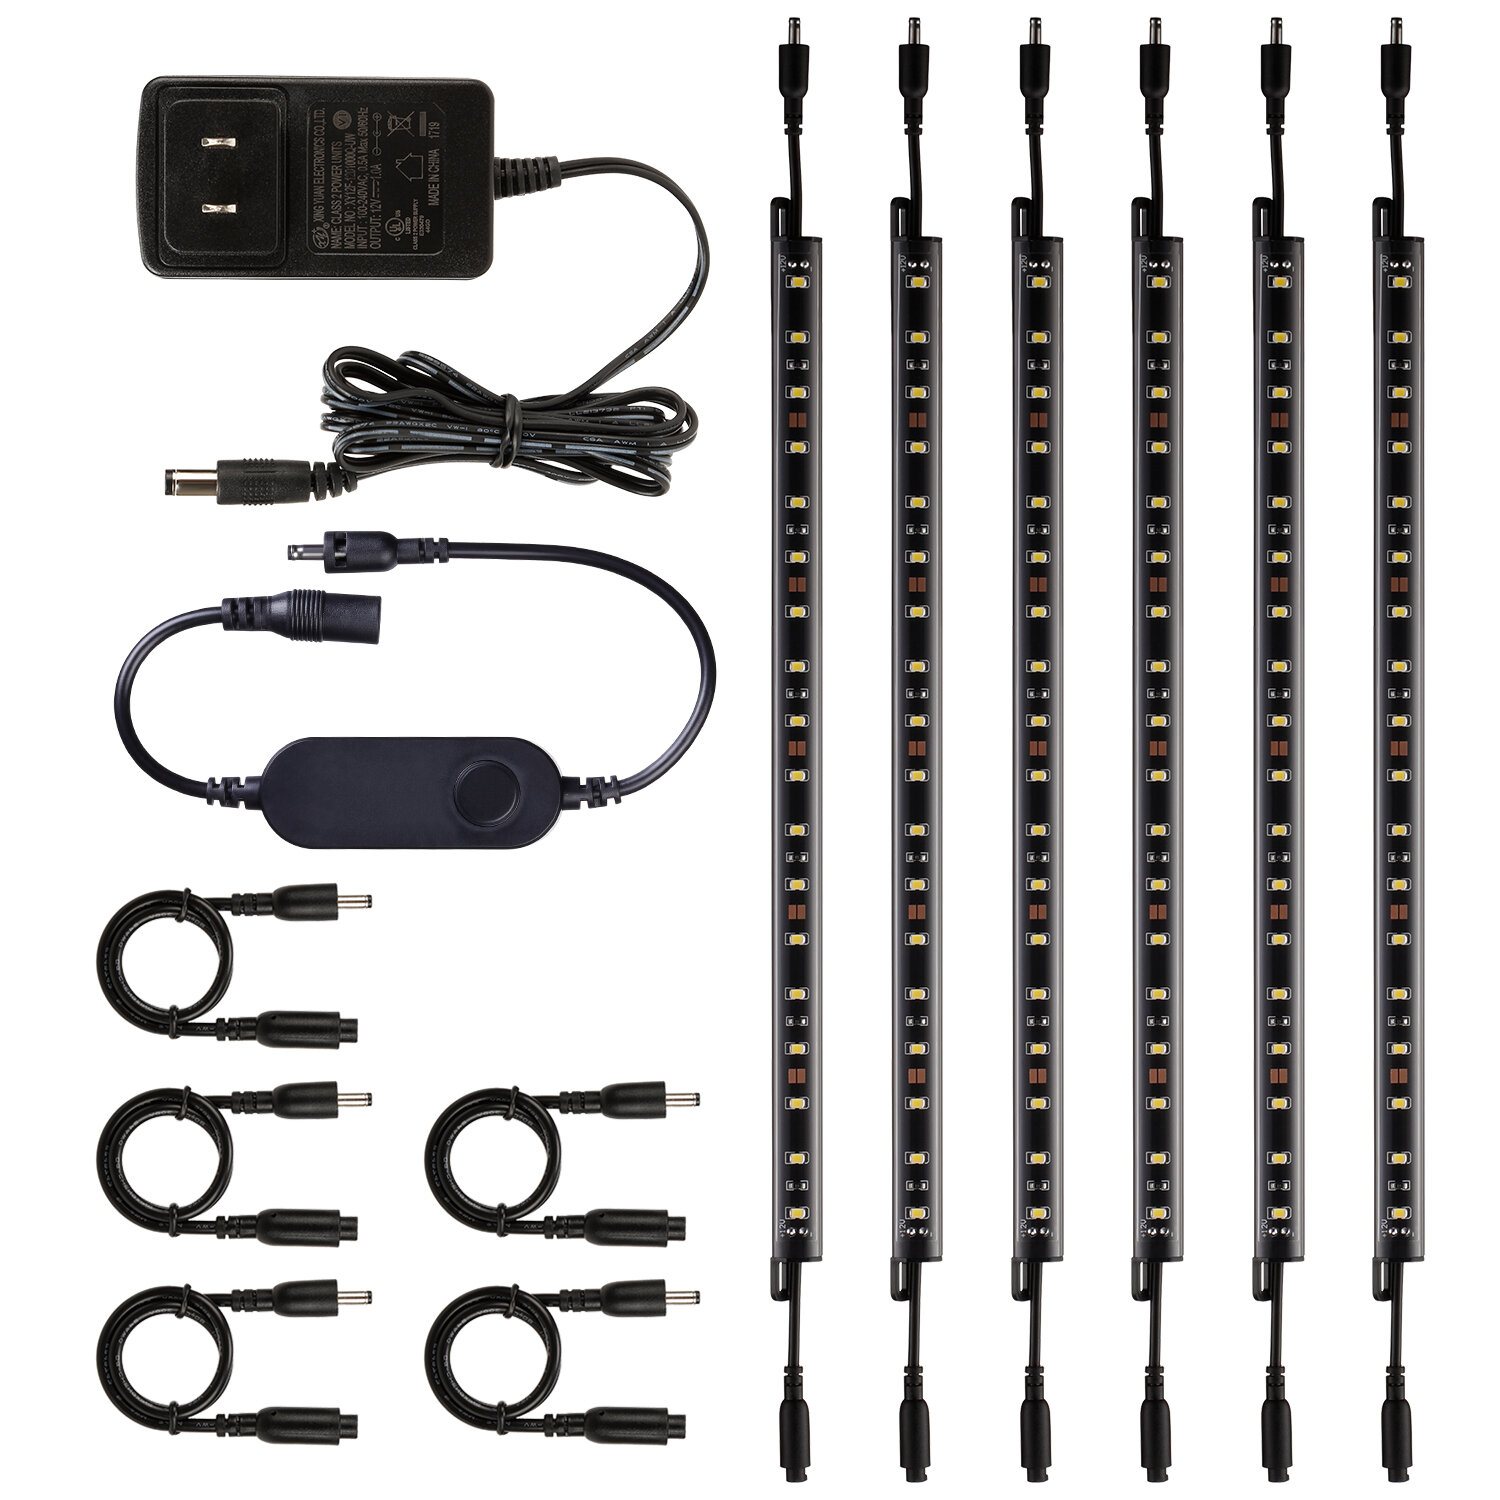 https://assets.wfcdn.com/im/56442194/compr-r85/1206/120639939/gunbox-led-voice-control-smart-safe-lighting-kit-dimmable-under-cabinet-strip-bar-lights-5000k.jpg